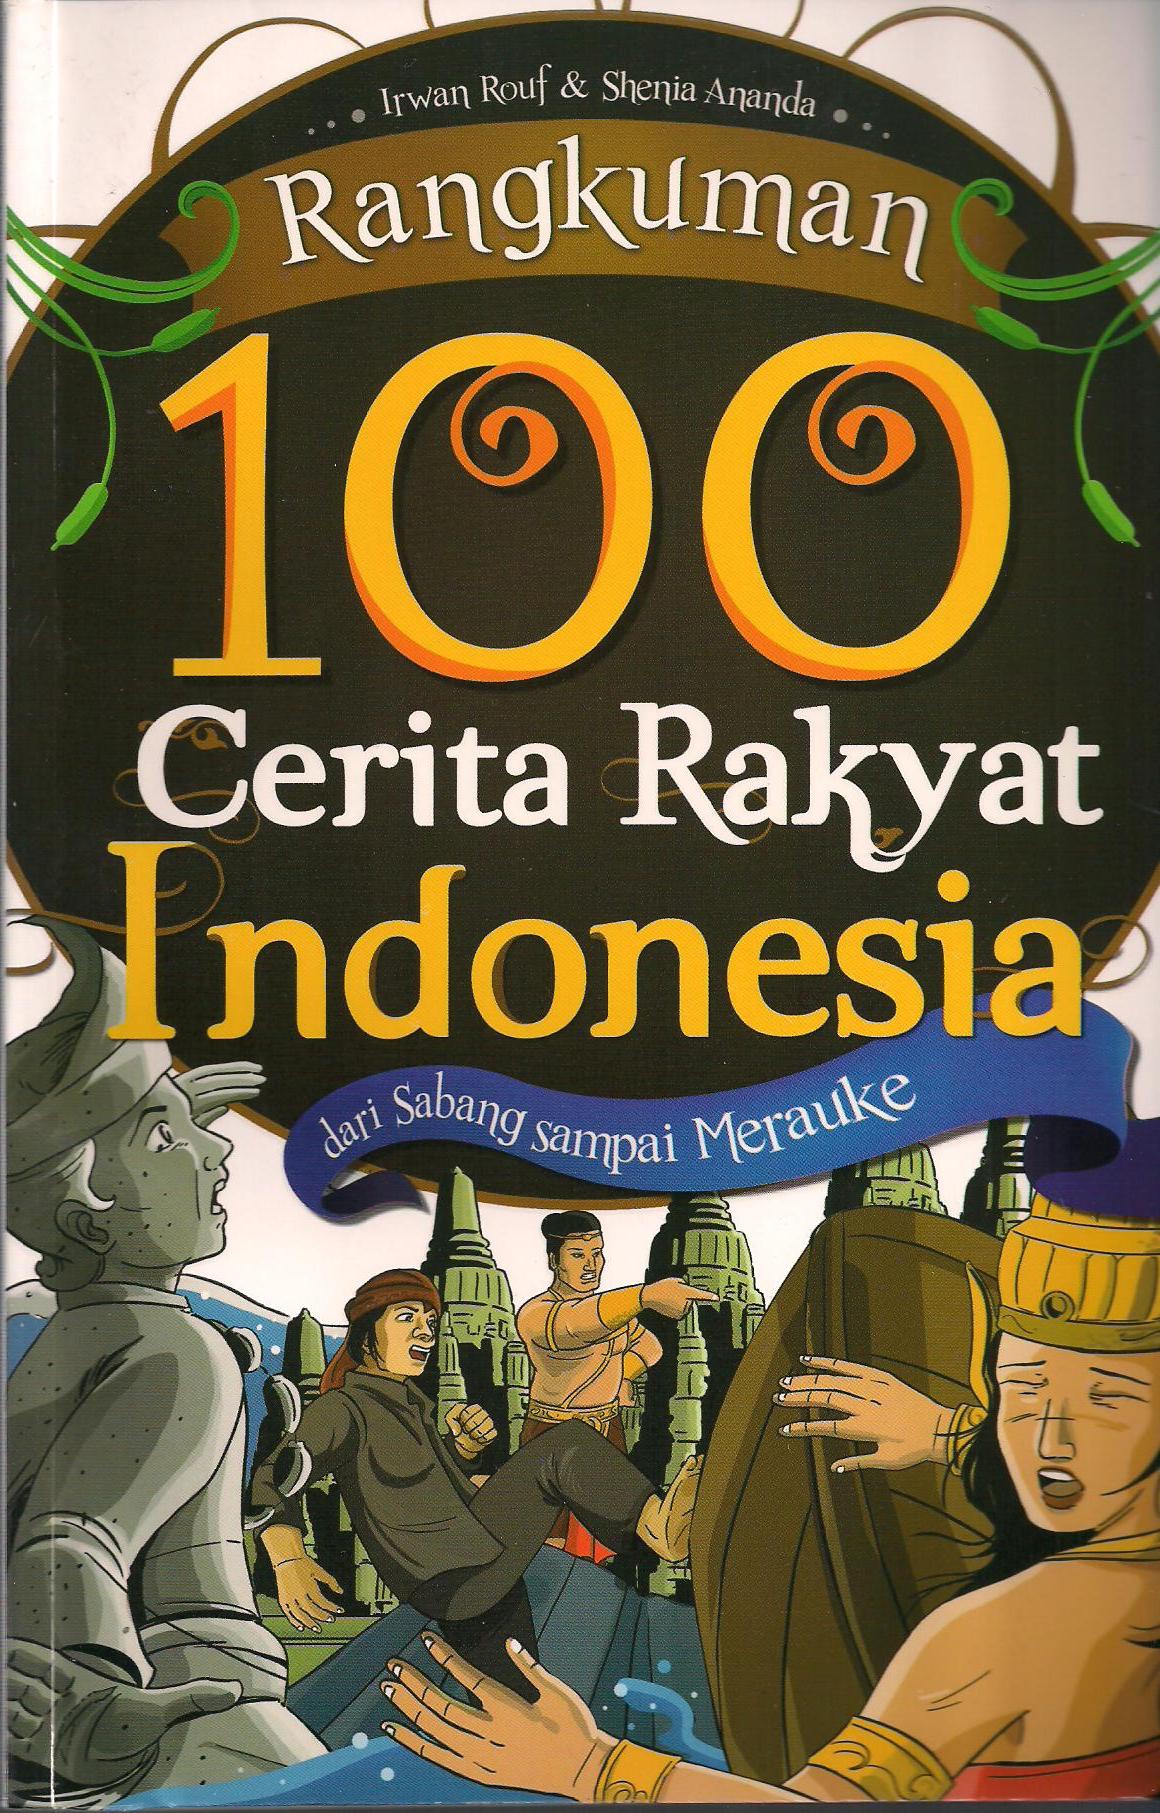  Buku  9 Cover  Rangkuman 100 Cerita  Rakyat Indonesia 